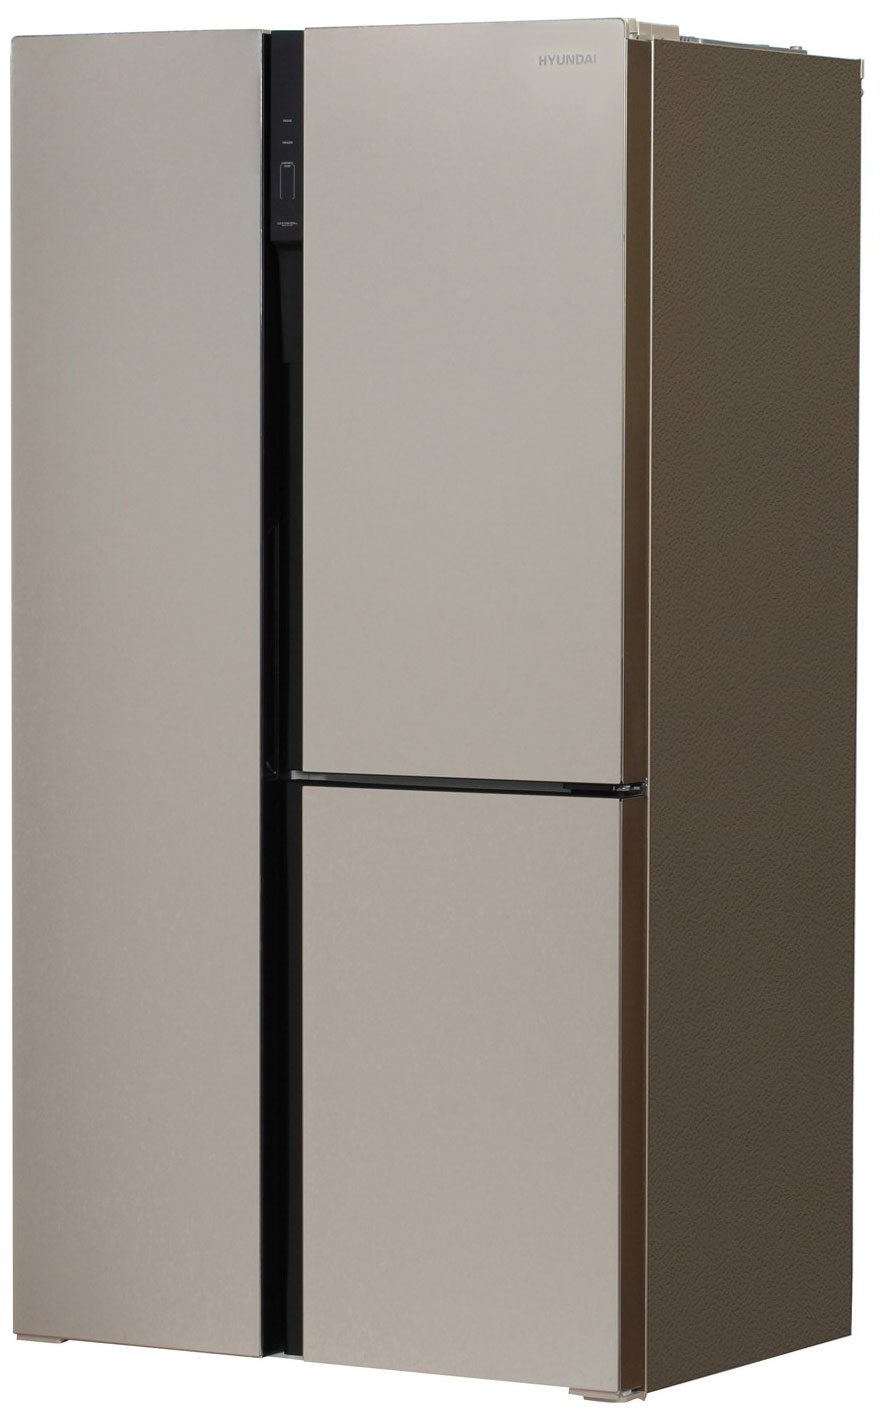 Холодильник Side by Side Hyundai CS6073FV шампань холодильник hyundai cs5073fv шампань стекло